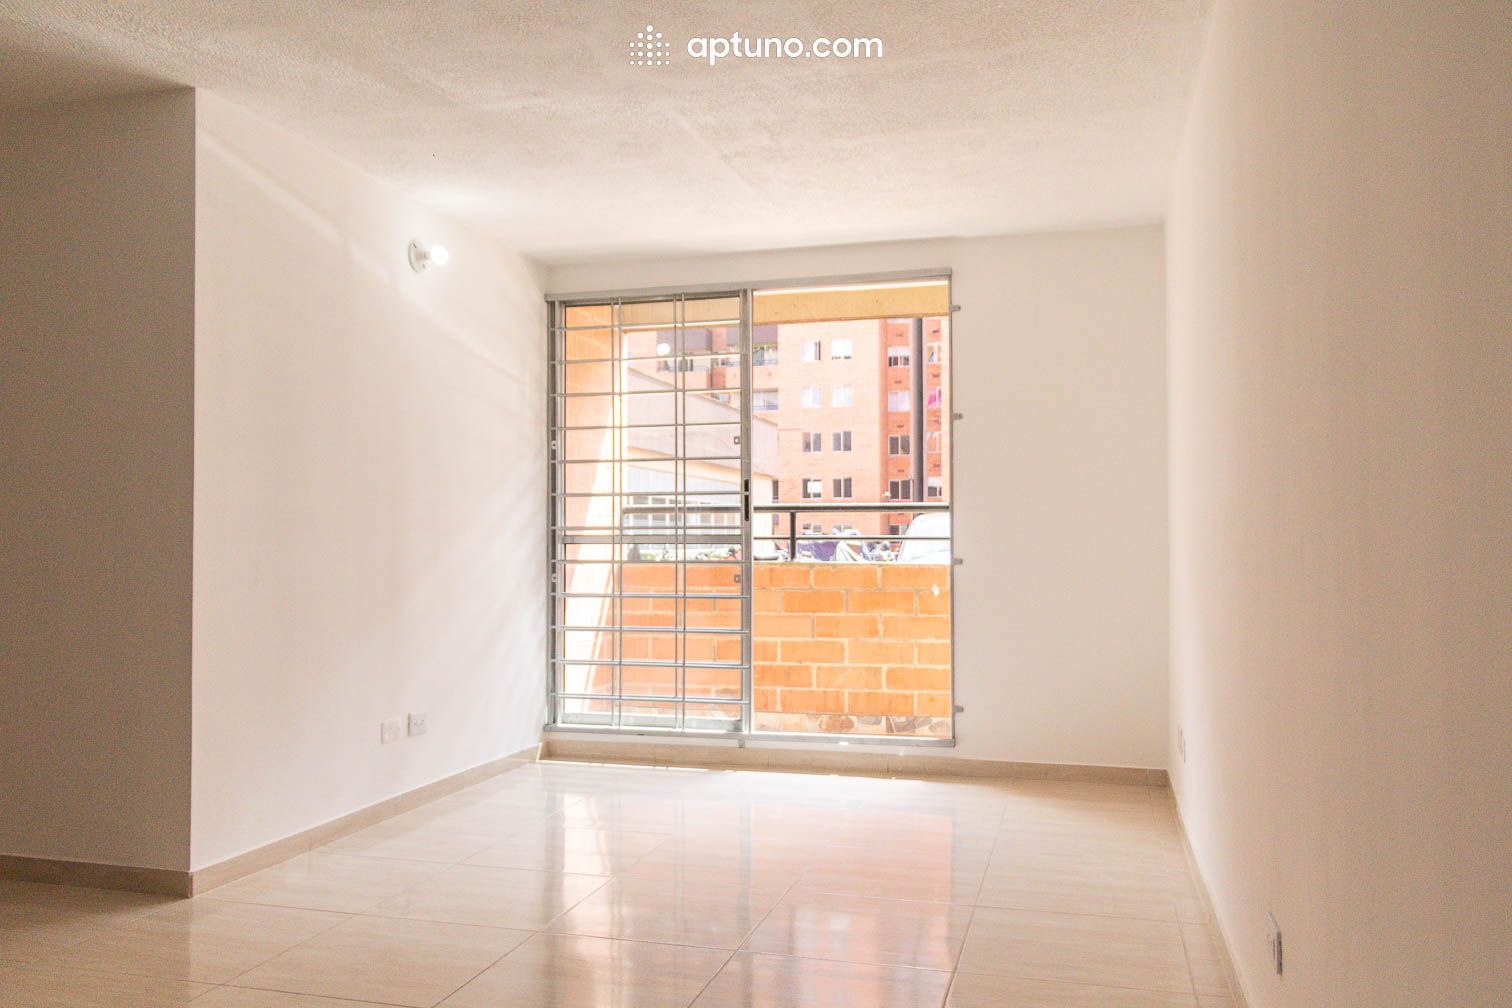 Apartamento en arriendo Madrid 61 m² - $ 850.000,00